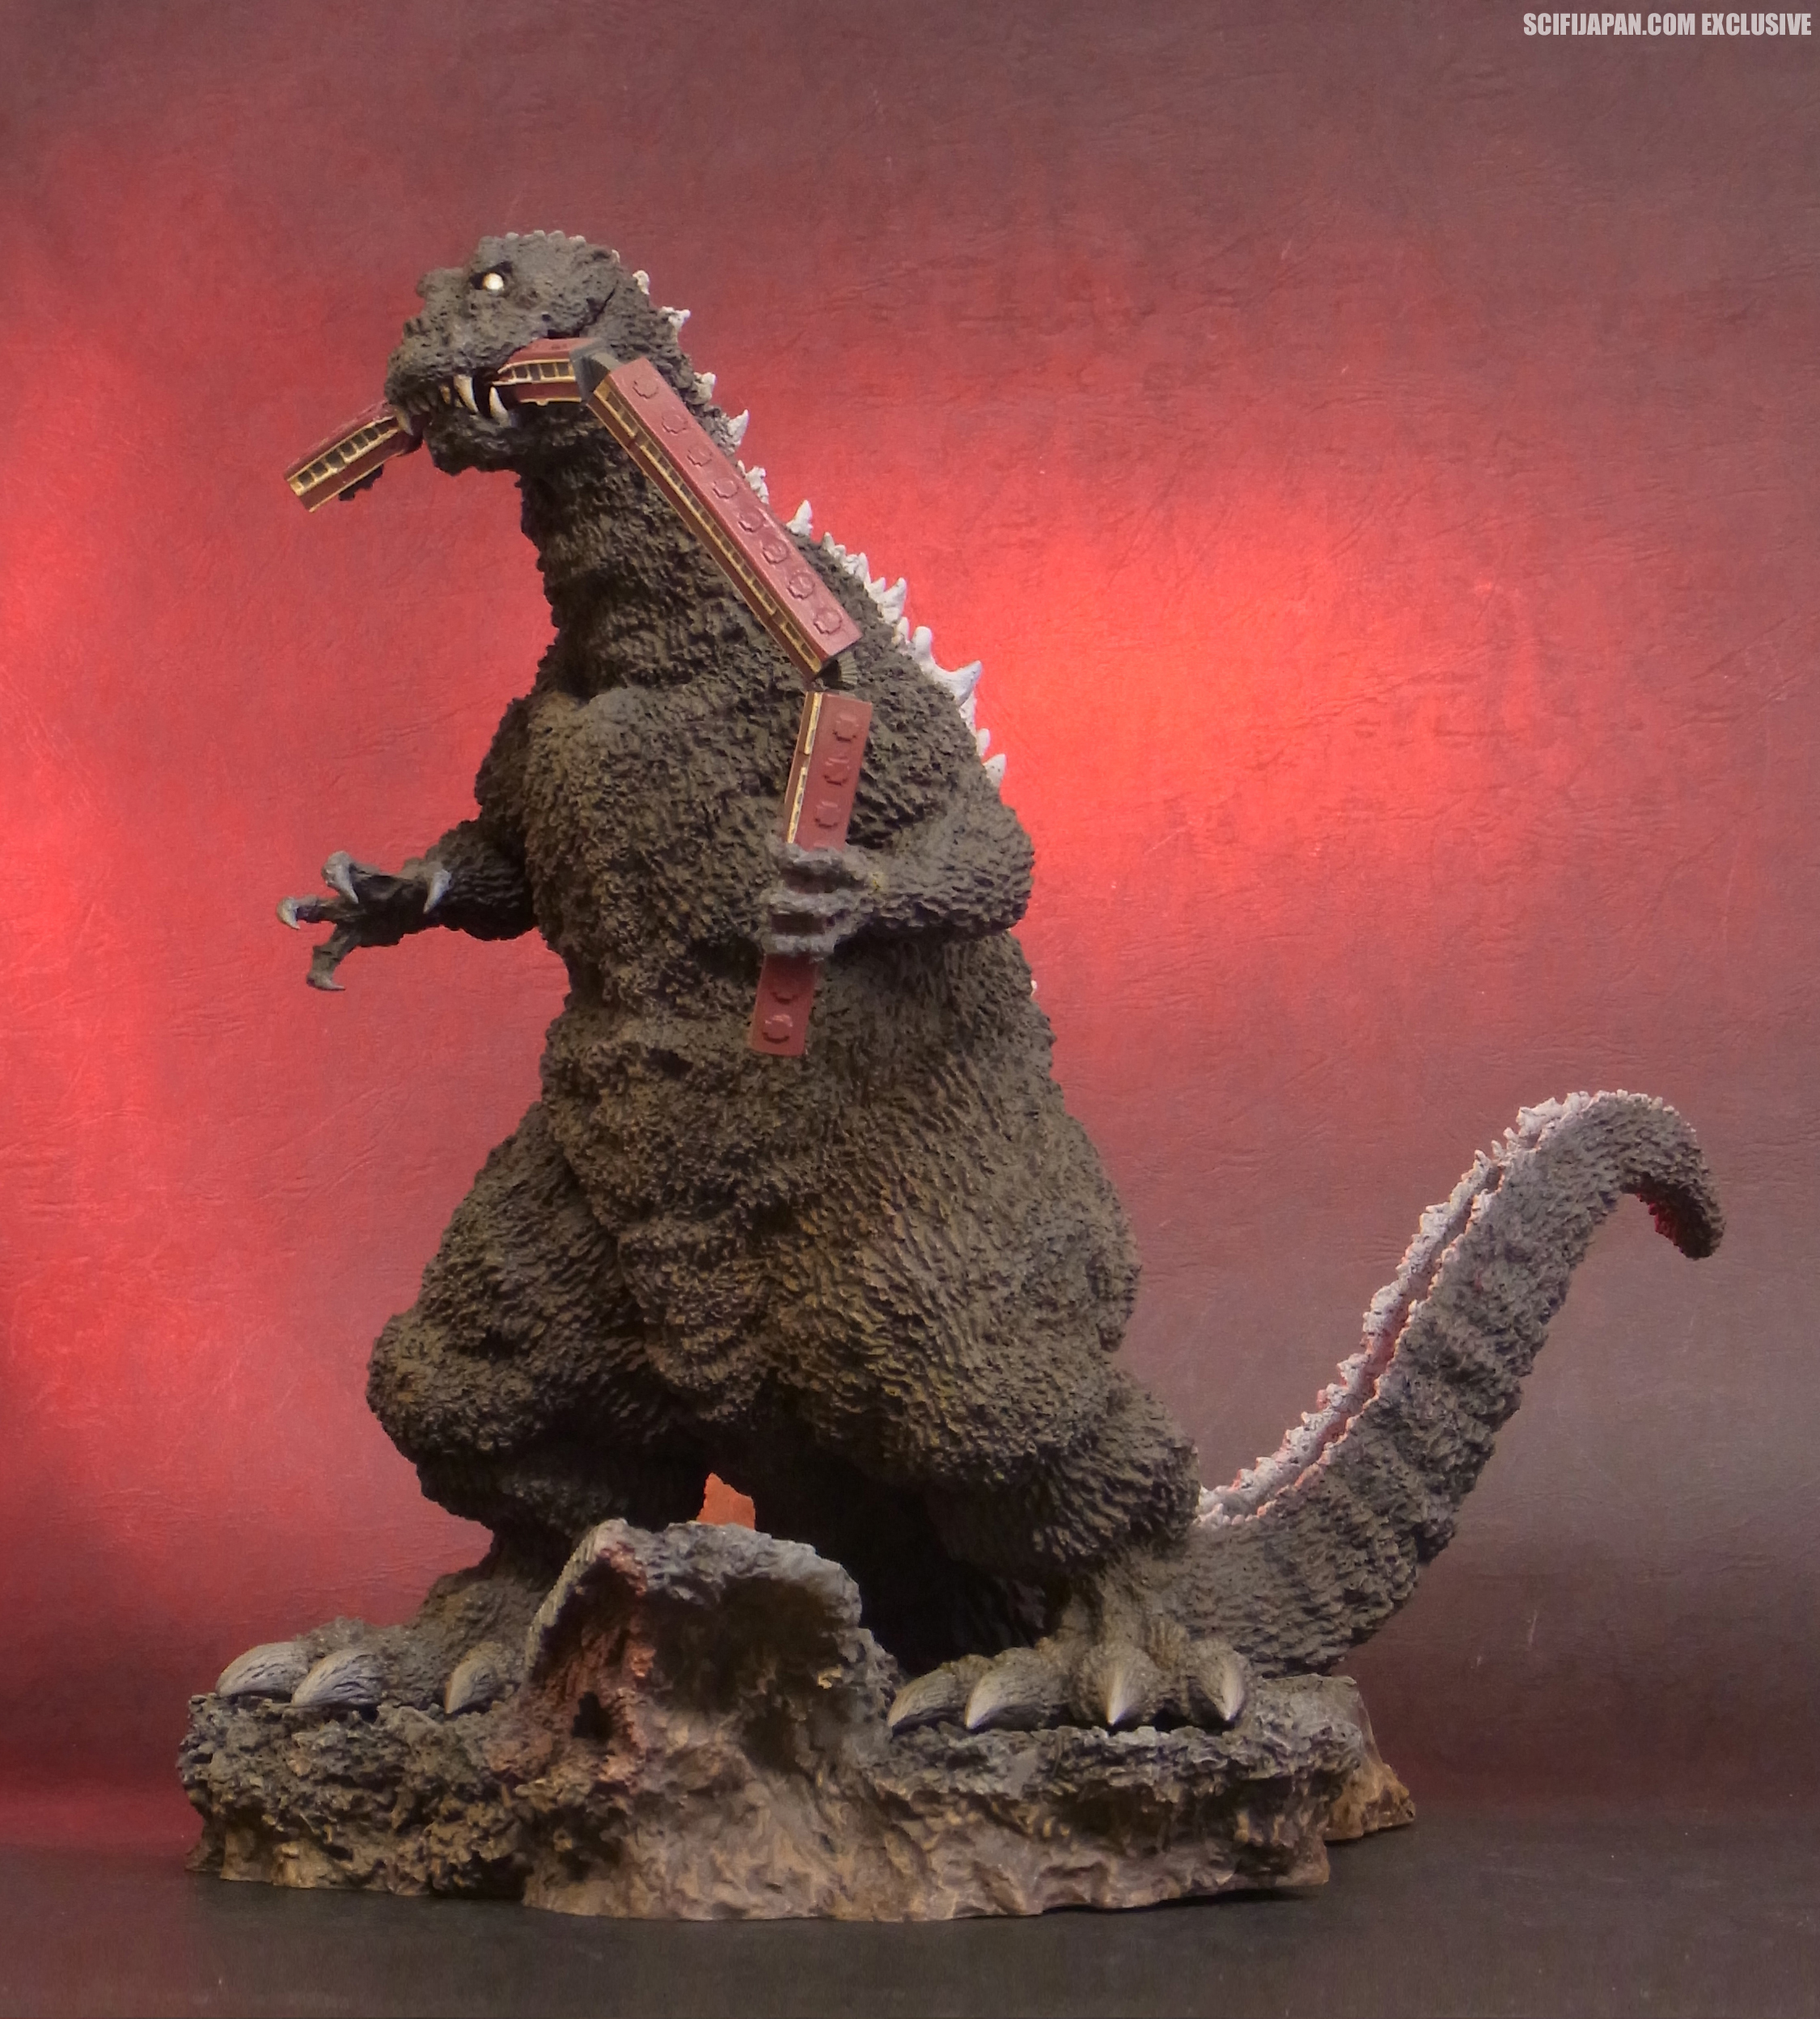 X-plus Toho 30cm Series Godzilla 1954 Figure Reprint Suit Colore  Godzilla store 